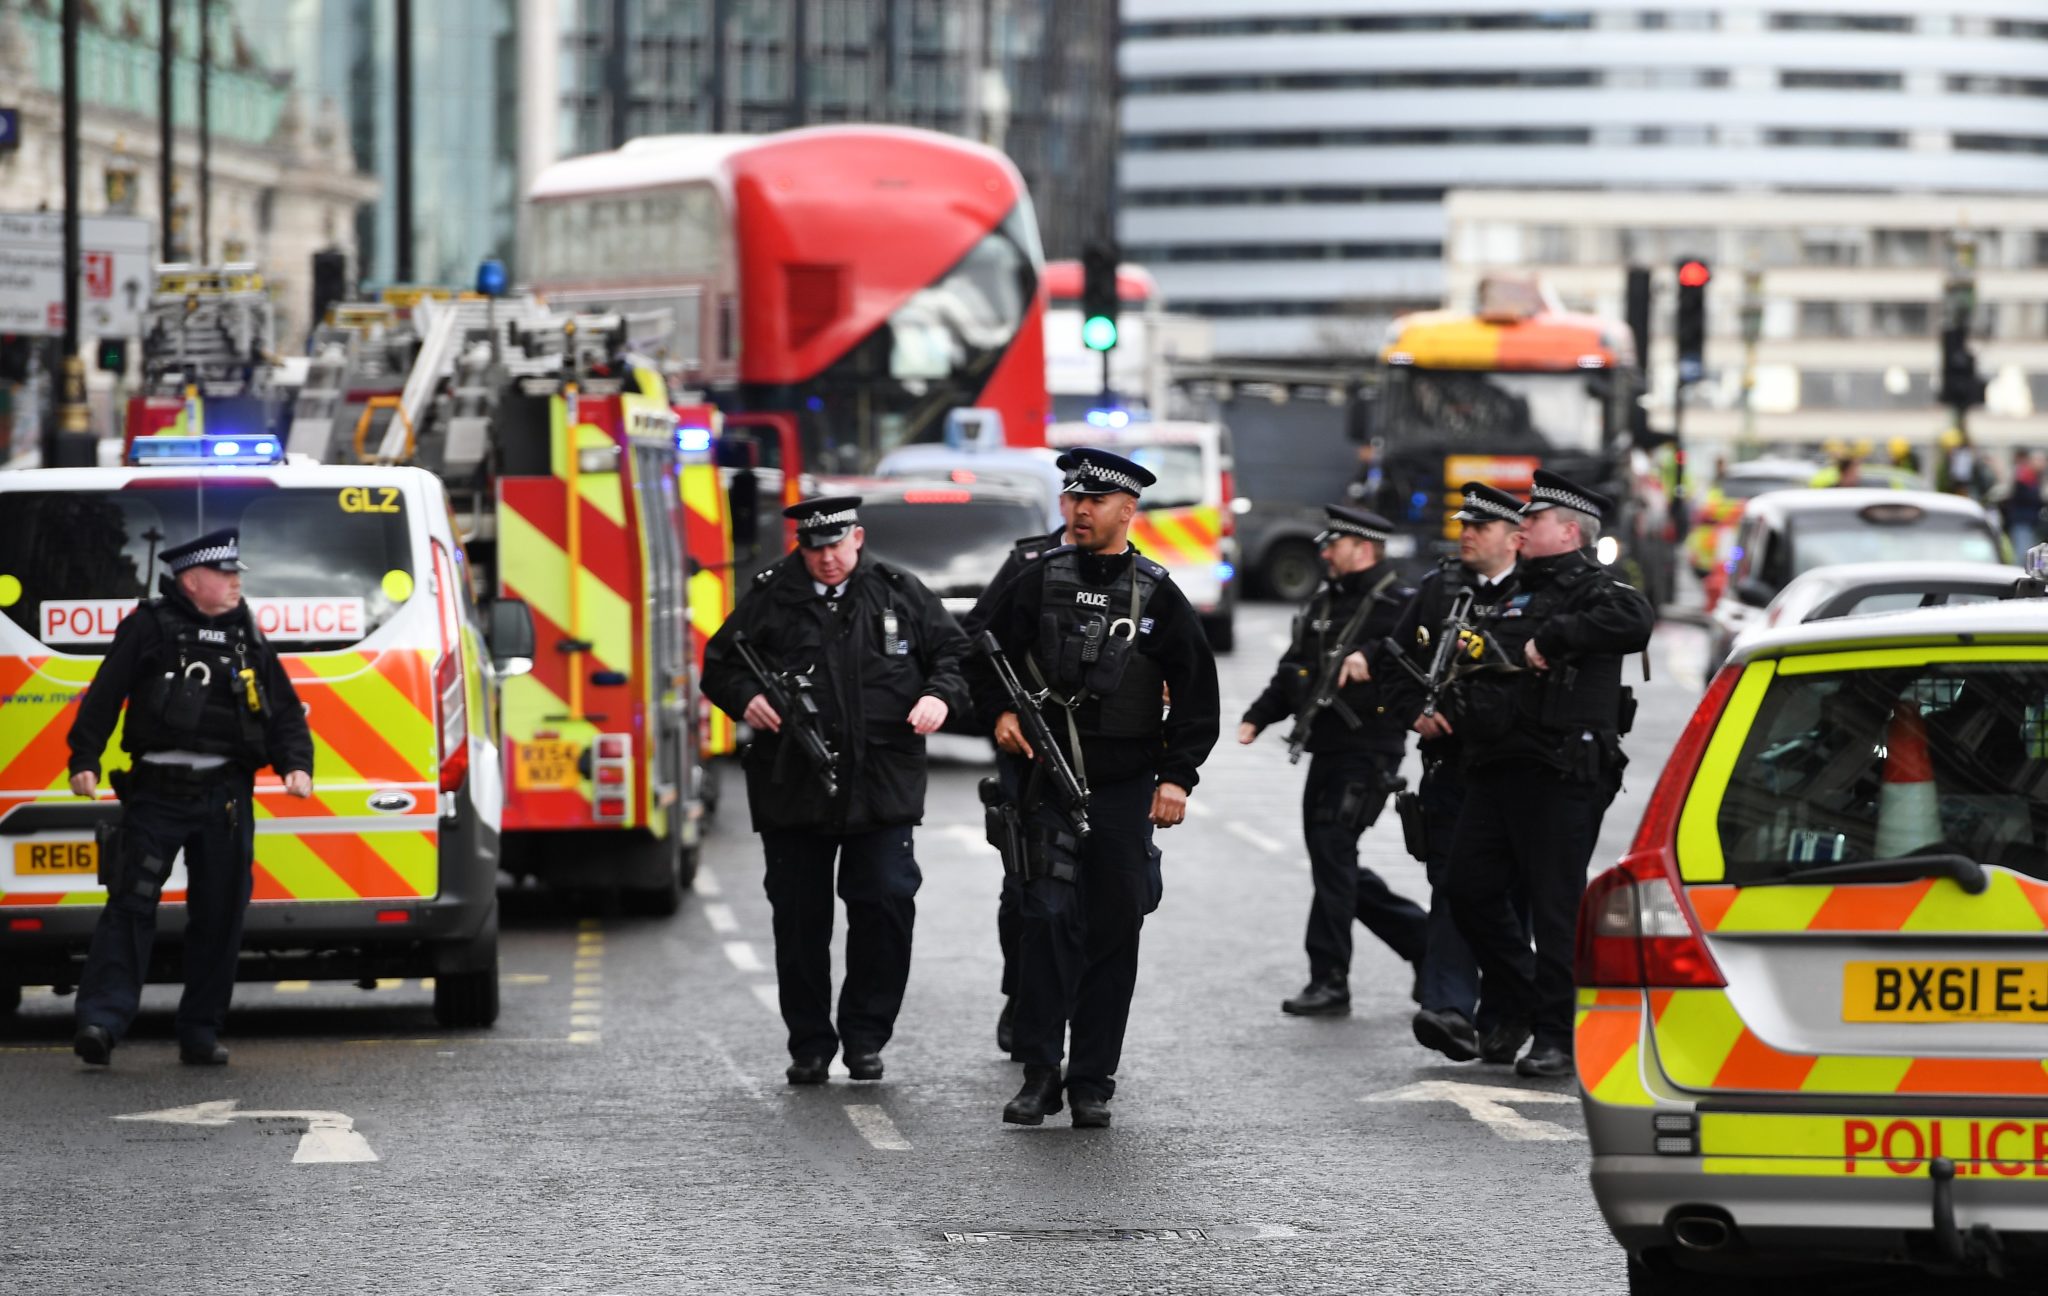 Wielka Brytania: zamach terrorystyczny, do którego doszło w okolicach parlamentu (foto. PAP/EPA/ANDY RAIN)
